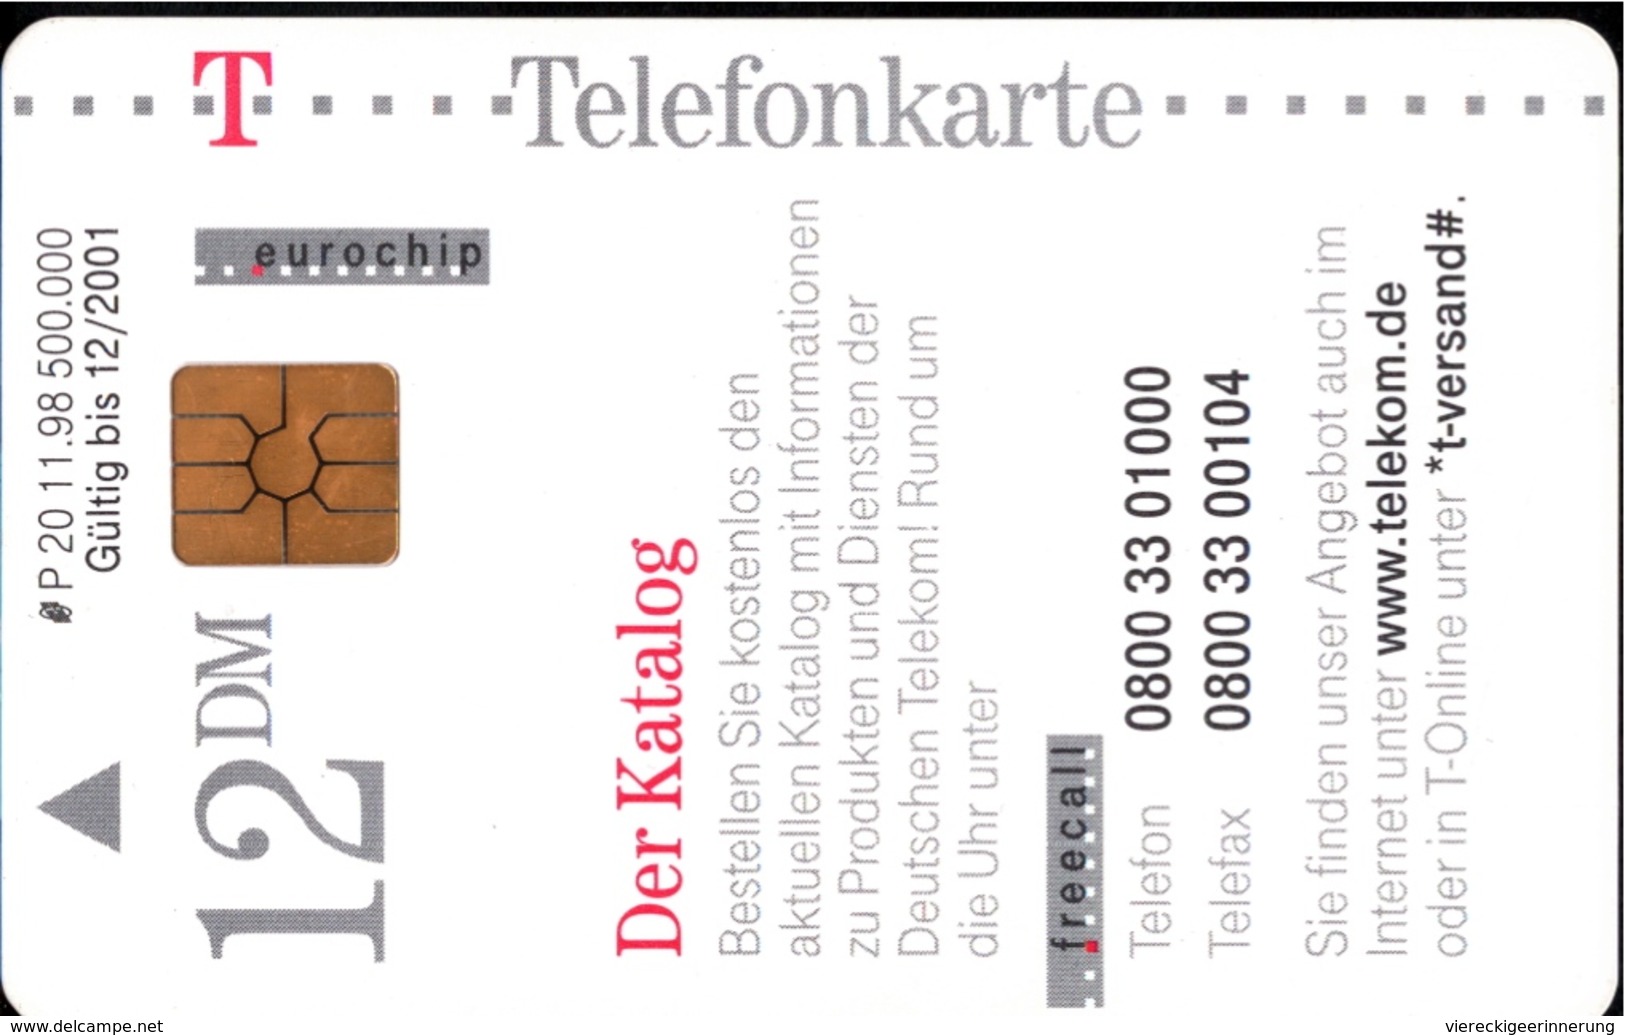 ! Telefonkarte, Telecarte, Phonecard, 1998, P20, Auflage 500000, Telekom Der Katalog, Germany - P & PD-Series: Schalterkarten Der Dt. Telekom